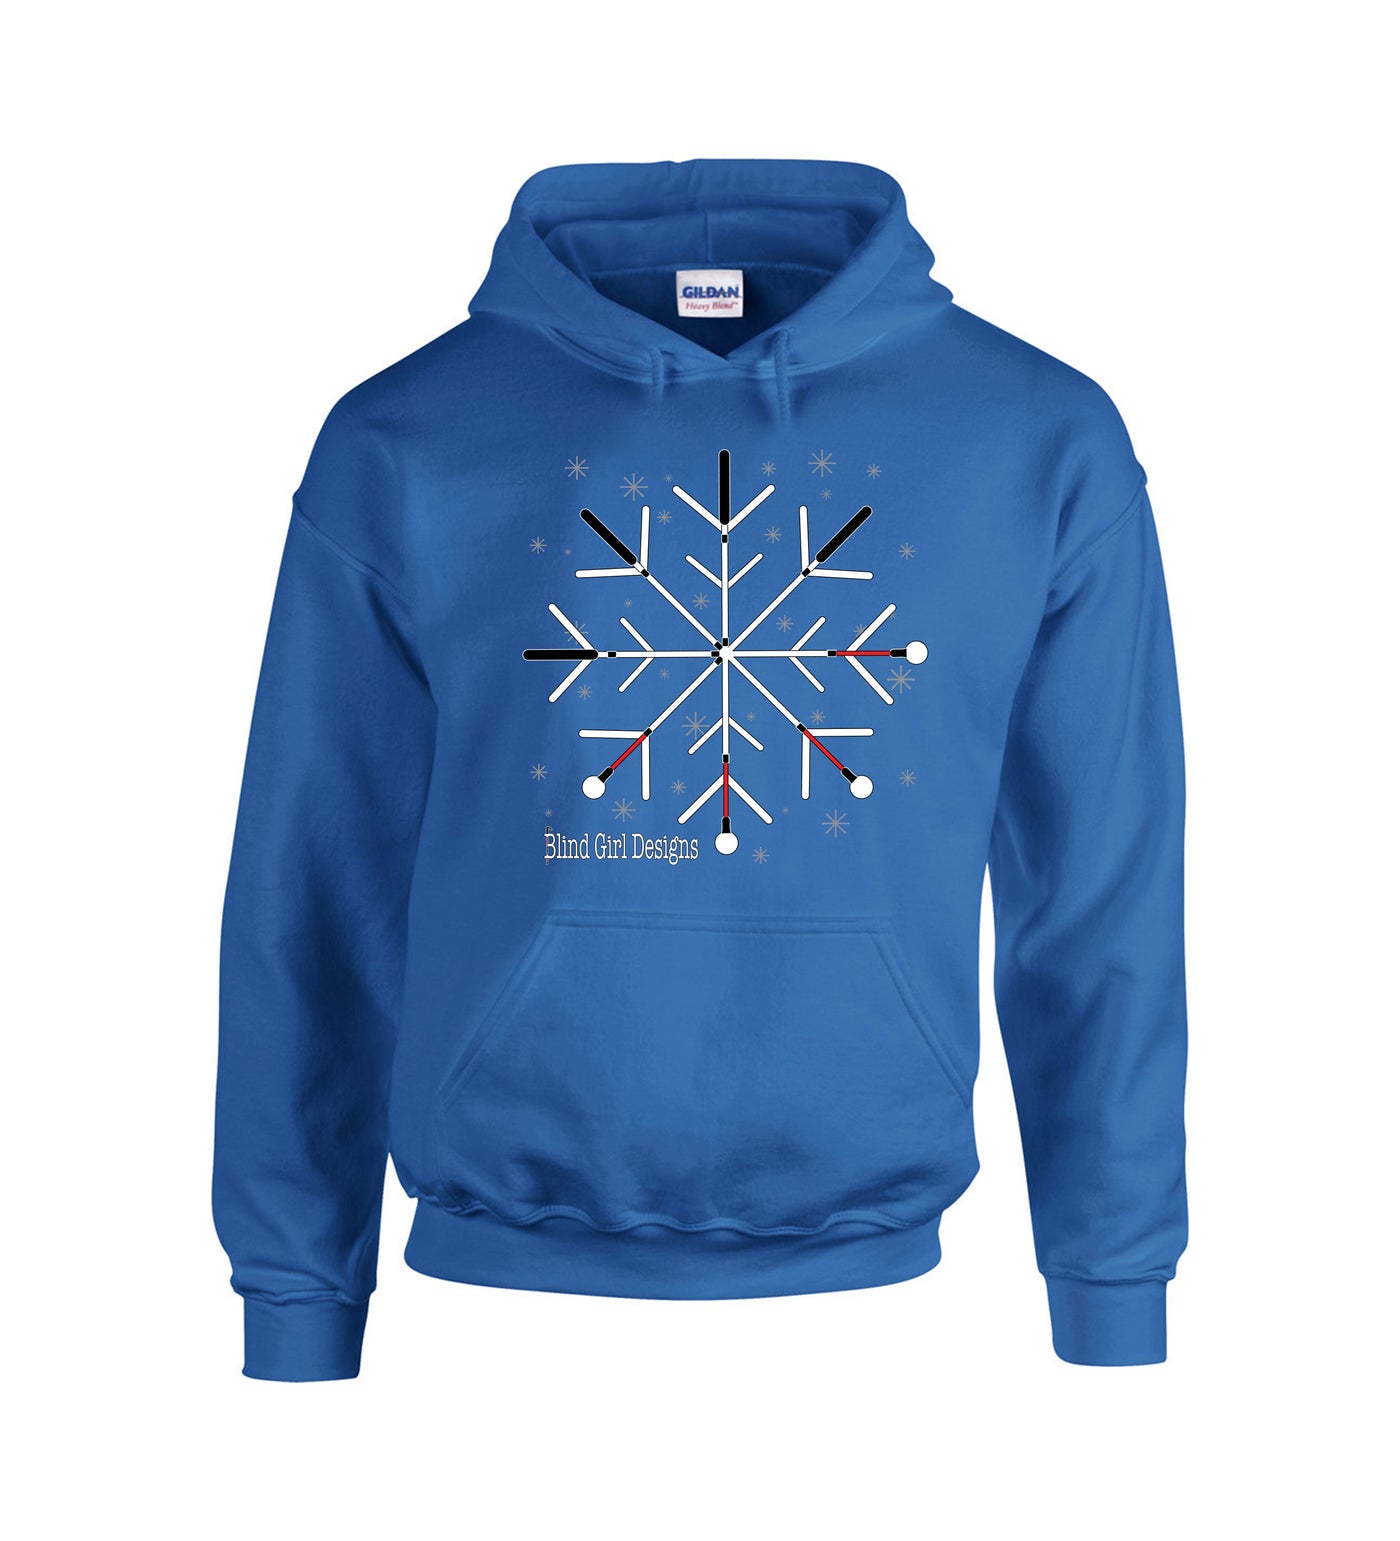 Snowflake White Canes Hoodie Sweatshirt - Royal Blue